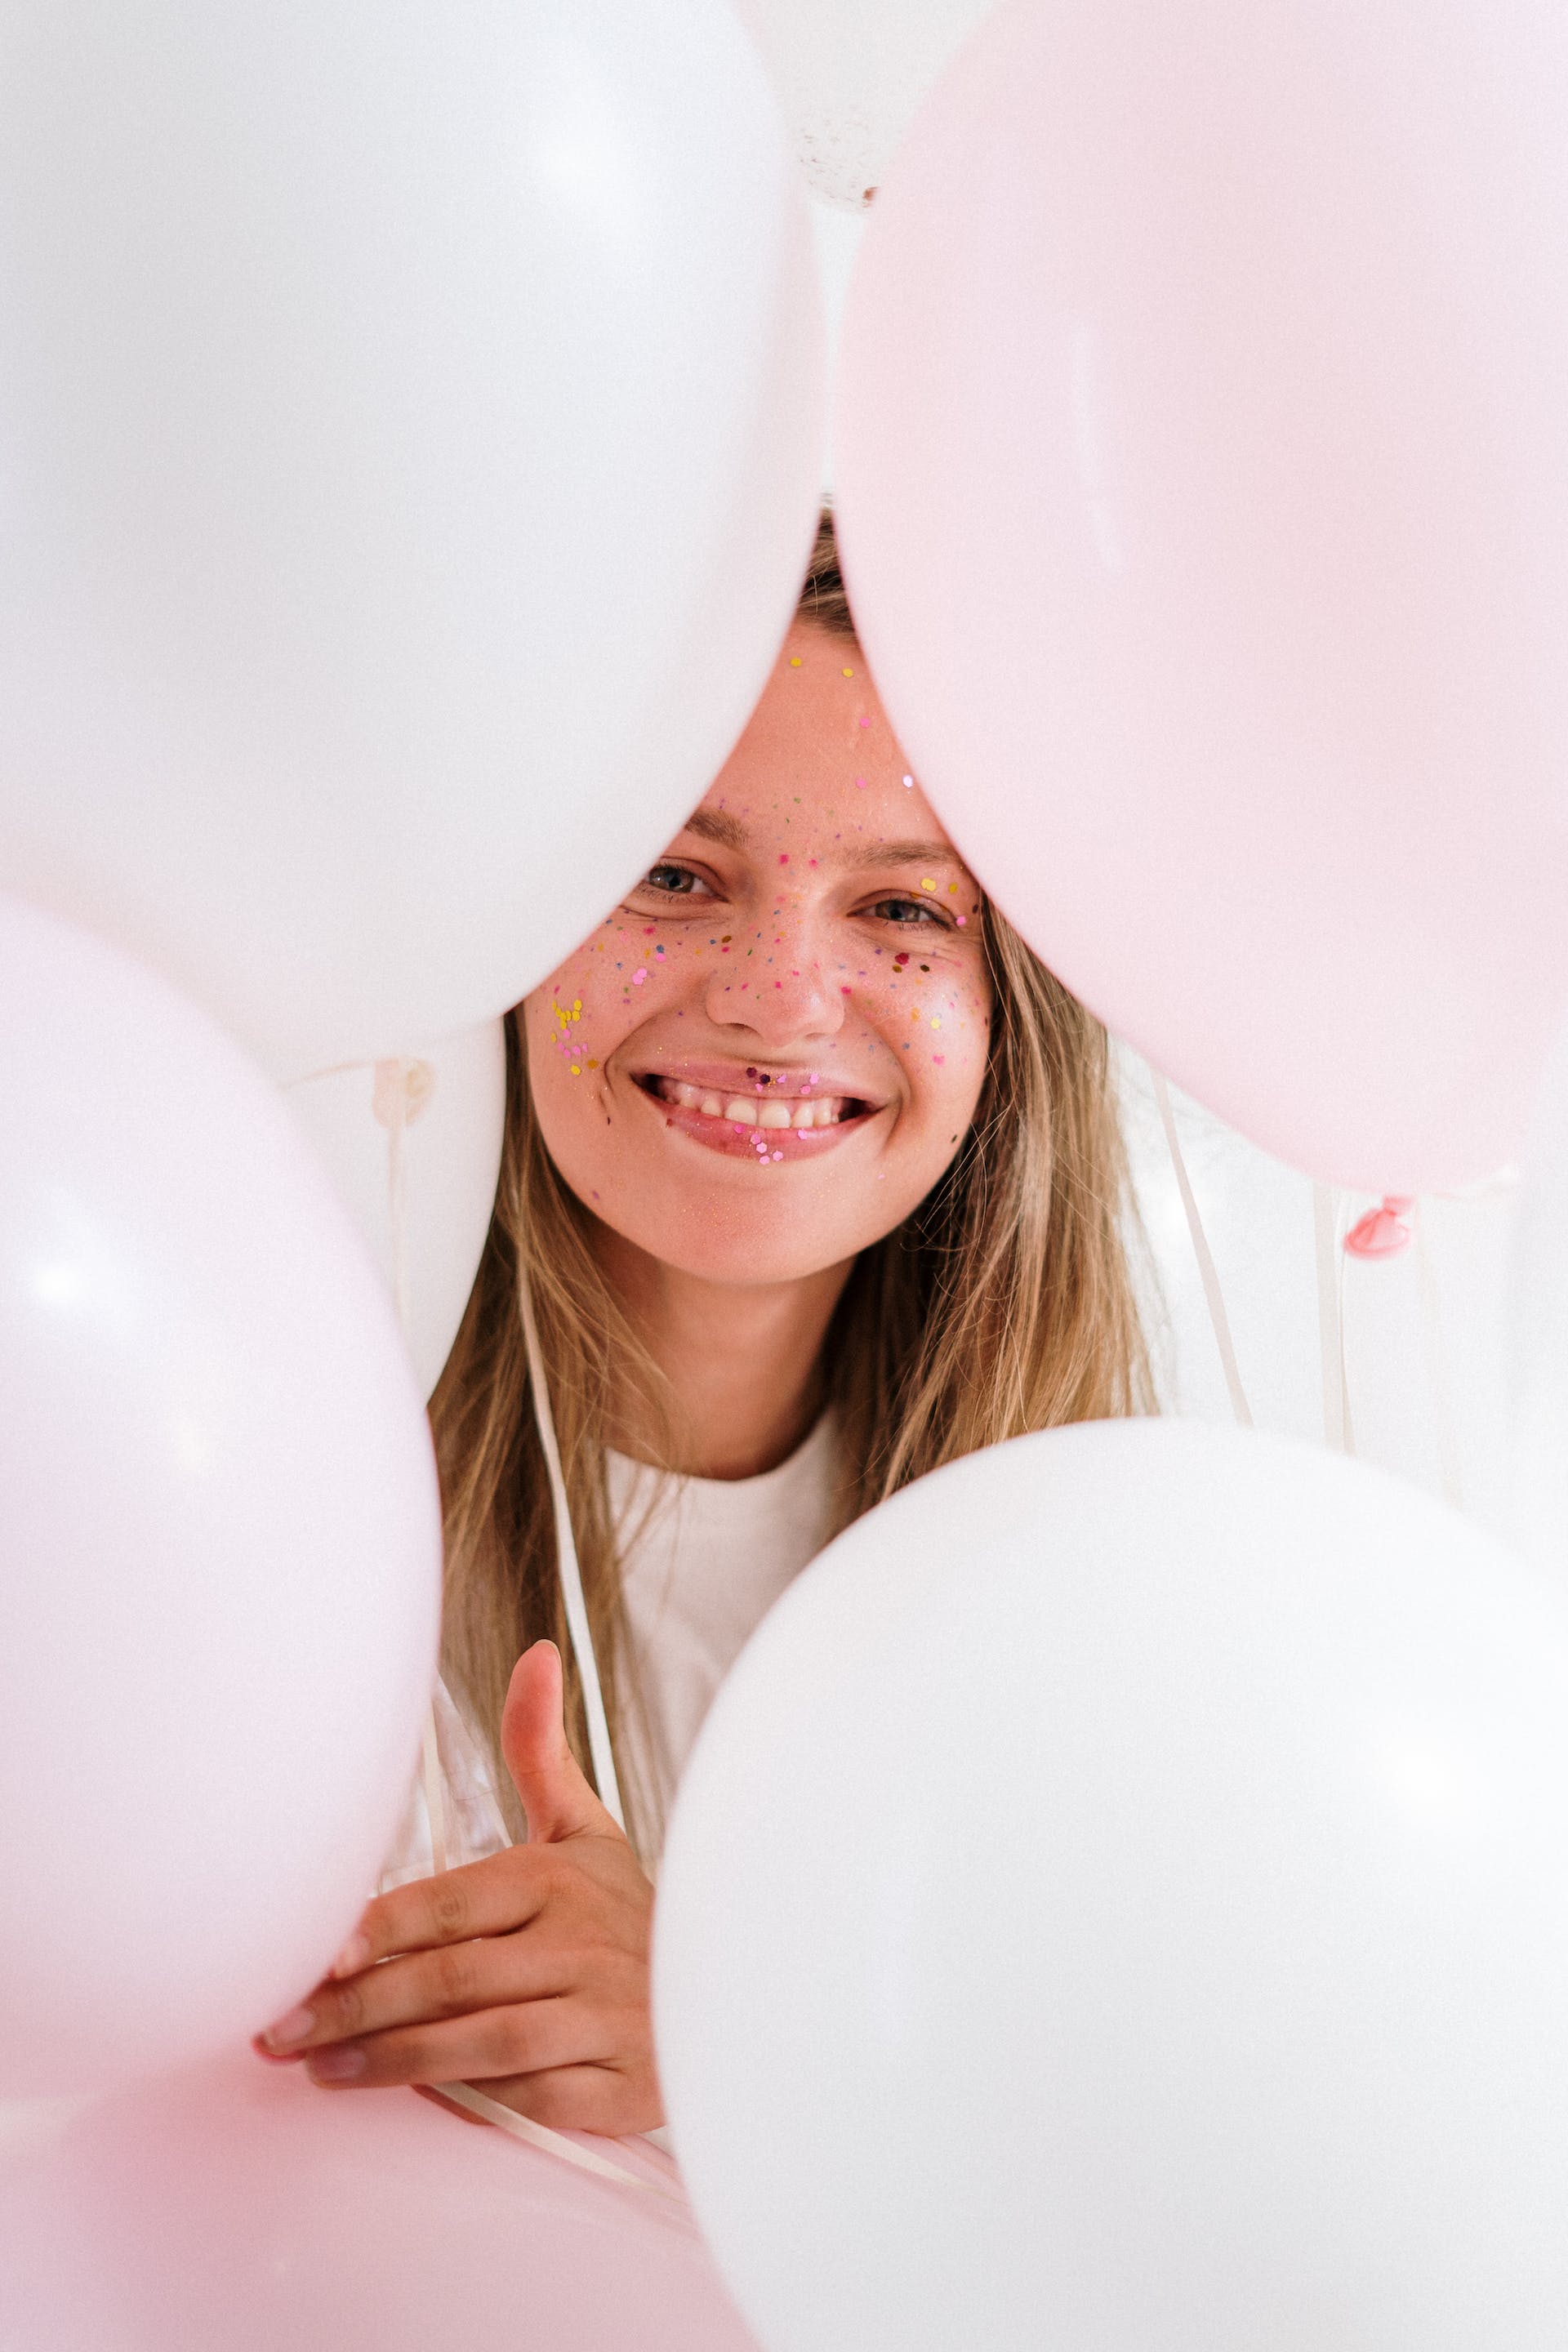 Ein junges Mädchen lächelt, während es Luftballons hält | Quelle: Pexels